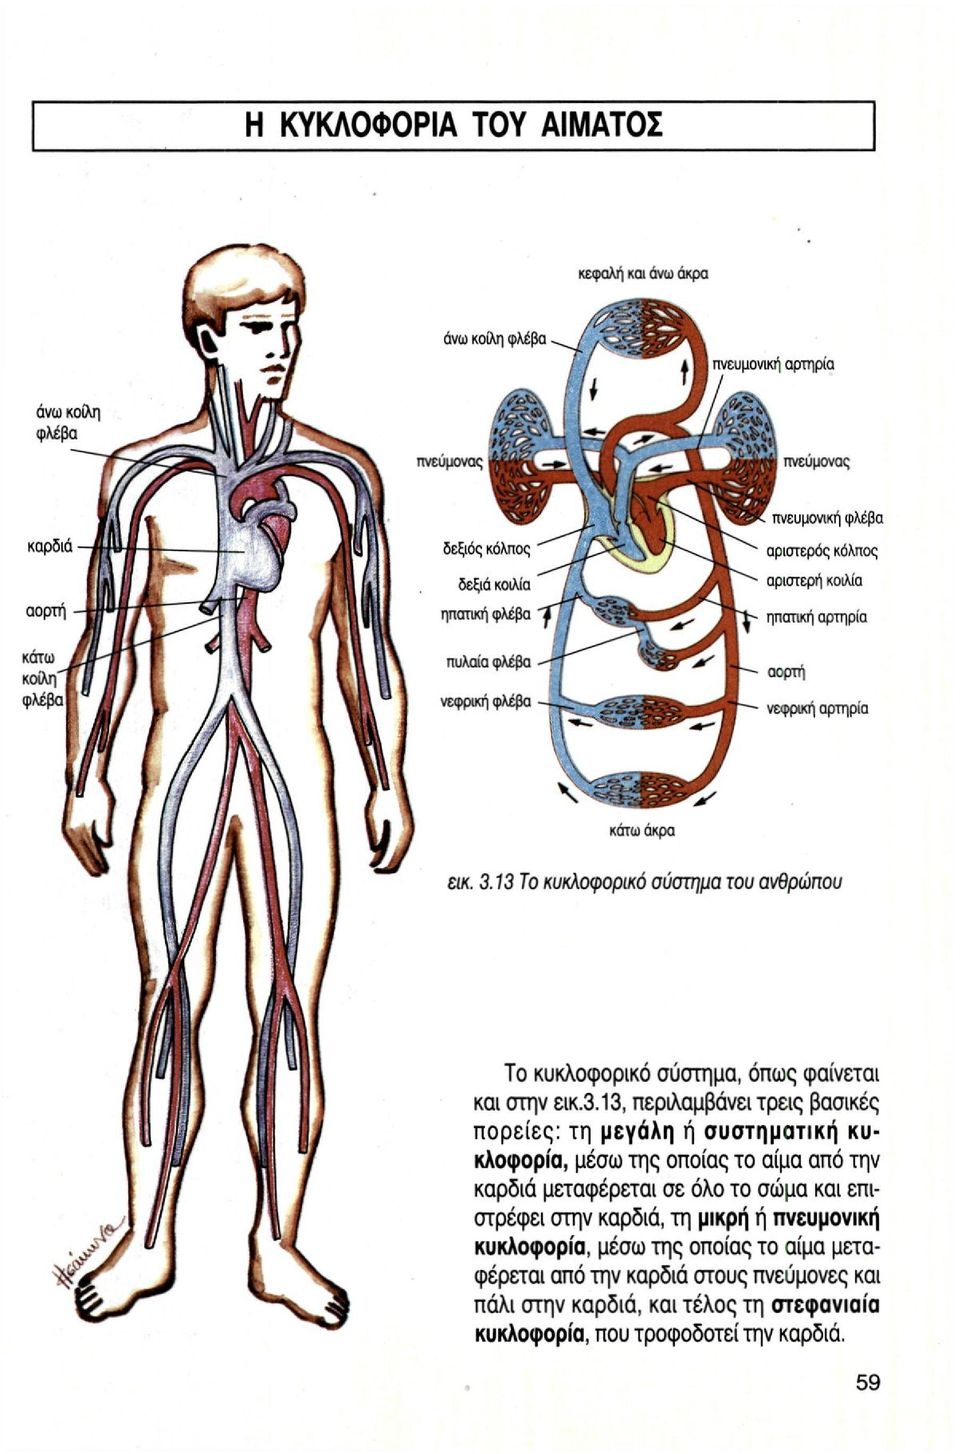 βασικές πορείες: τη μεγάλη ή συστηματική κυκλοφορία, μέσω της οποίας το αίμα από την καρδιά μεταφέρεται σε όλο το σώμα